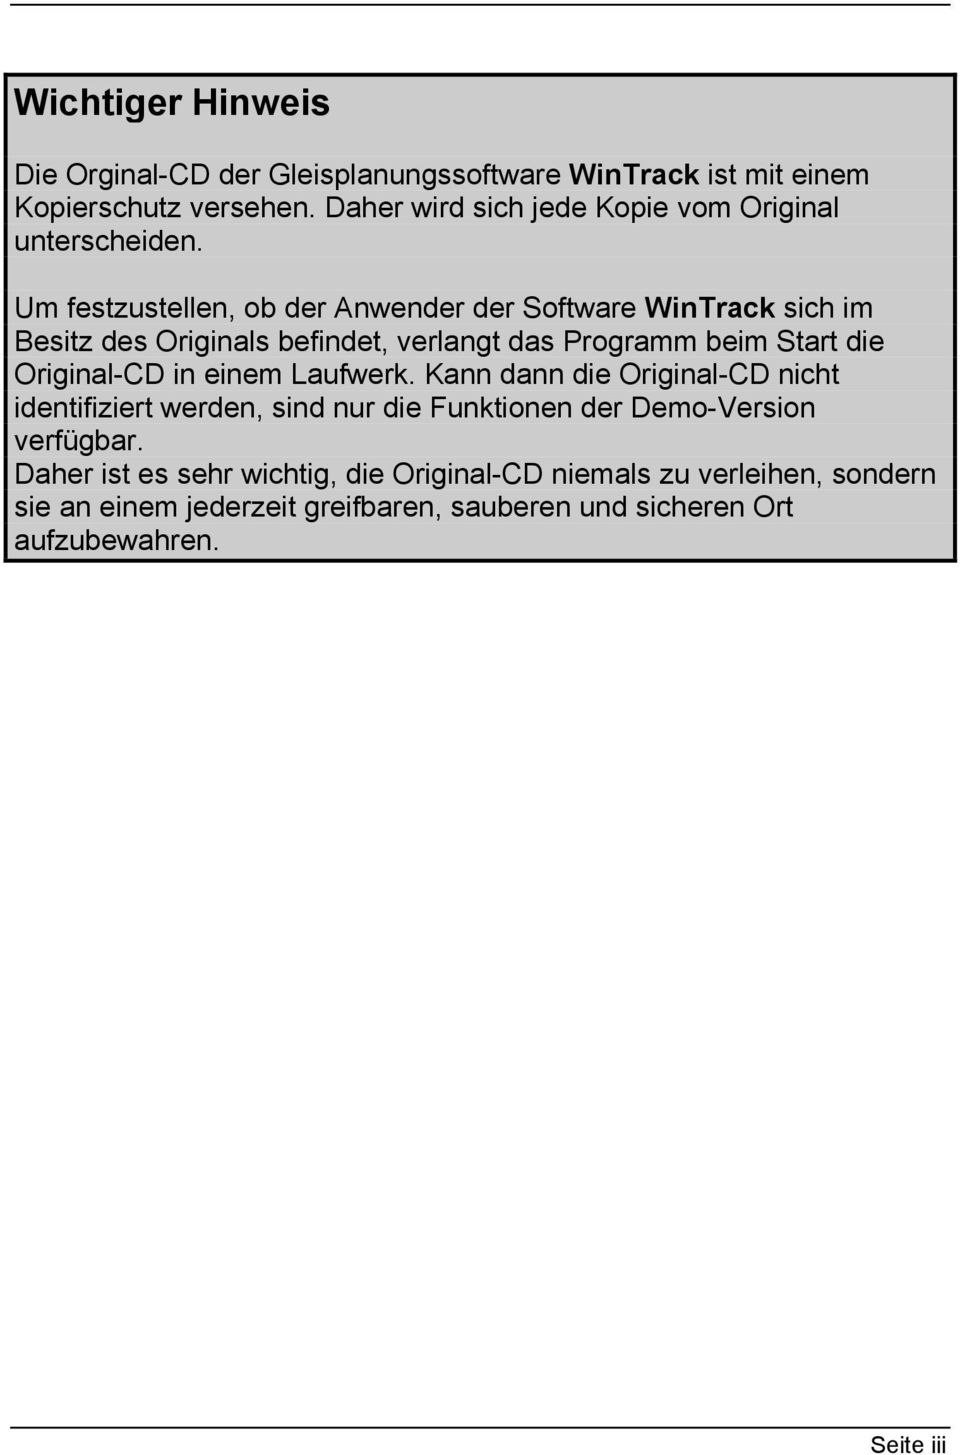 Um festzustellen, ob der Anwender der Software WinTrack sich im Besitz des Originals befindet, verlangt das Programm beim Start die Original-CD in